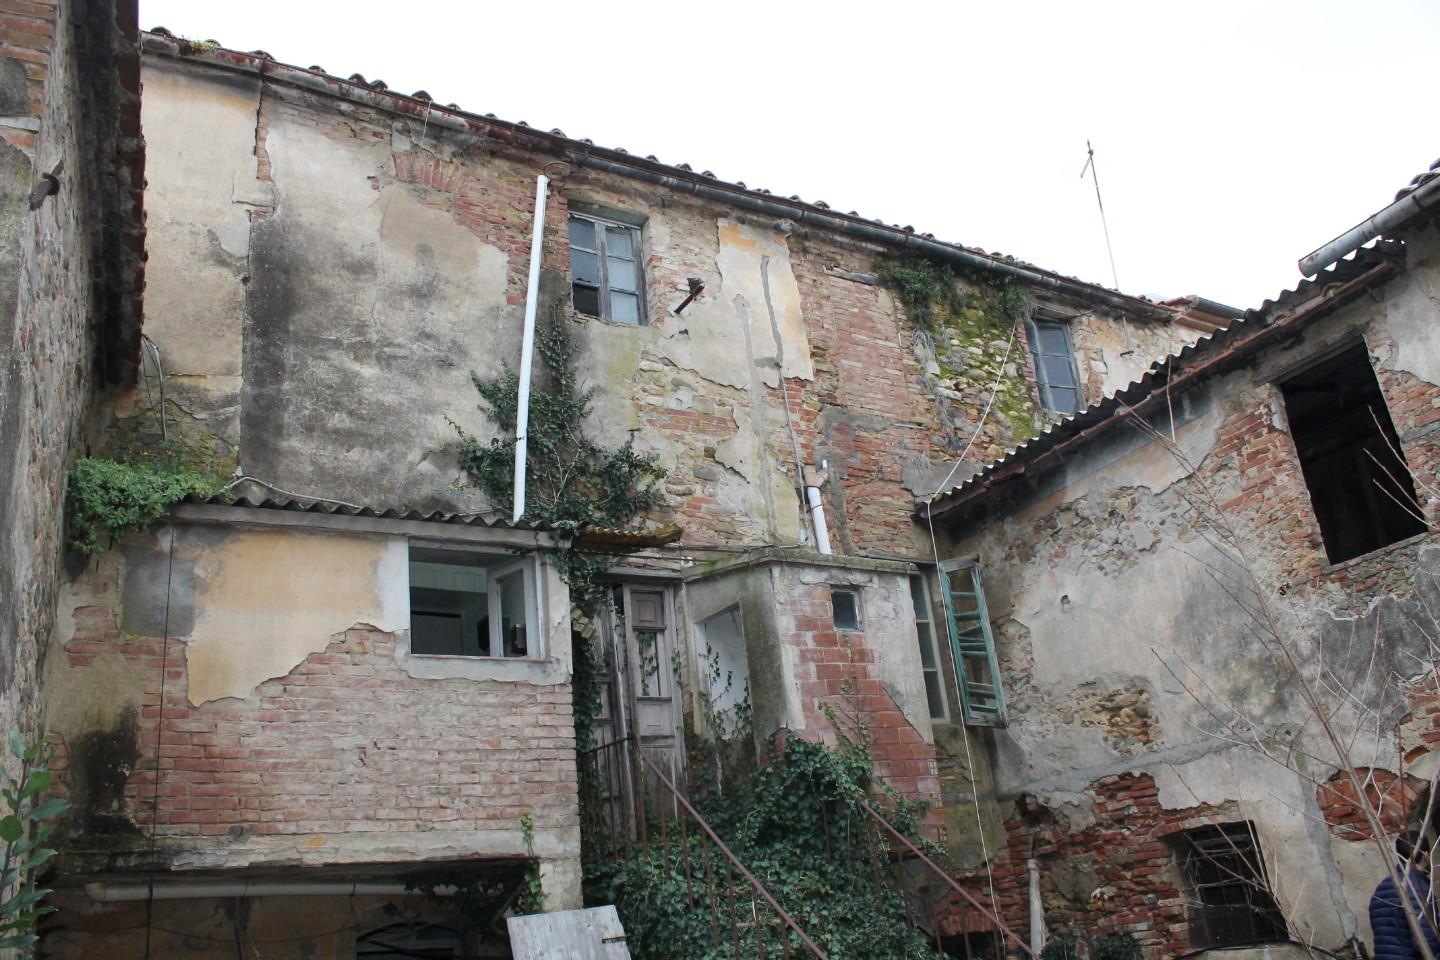 Historic building for sale in Terricciola (PI)